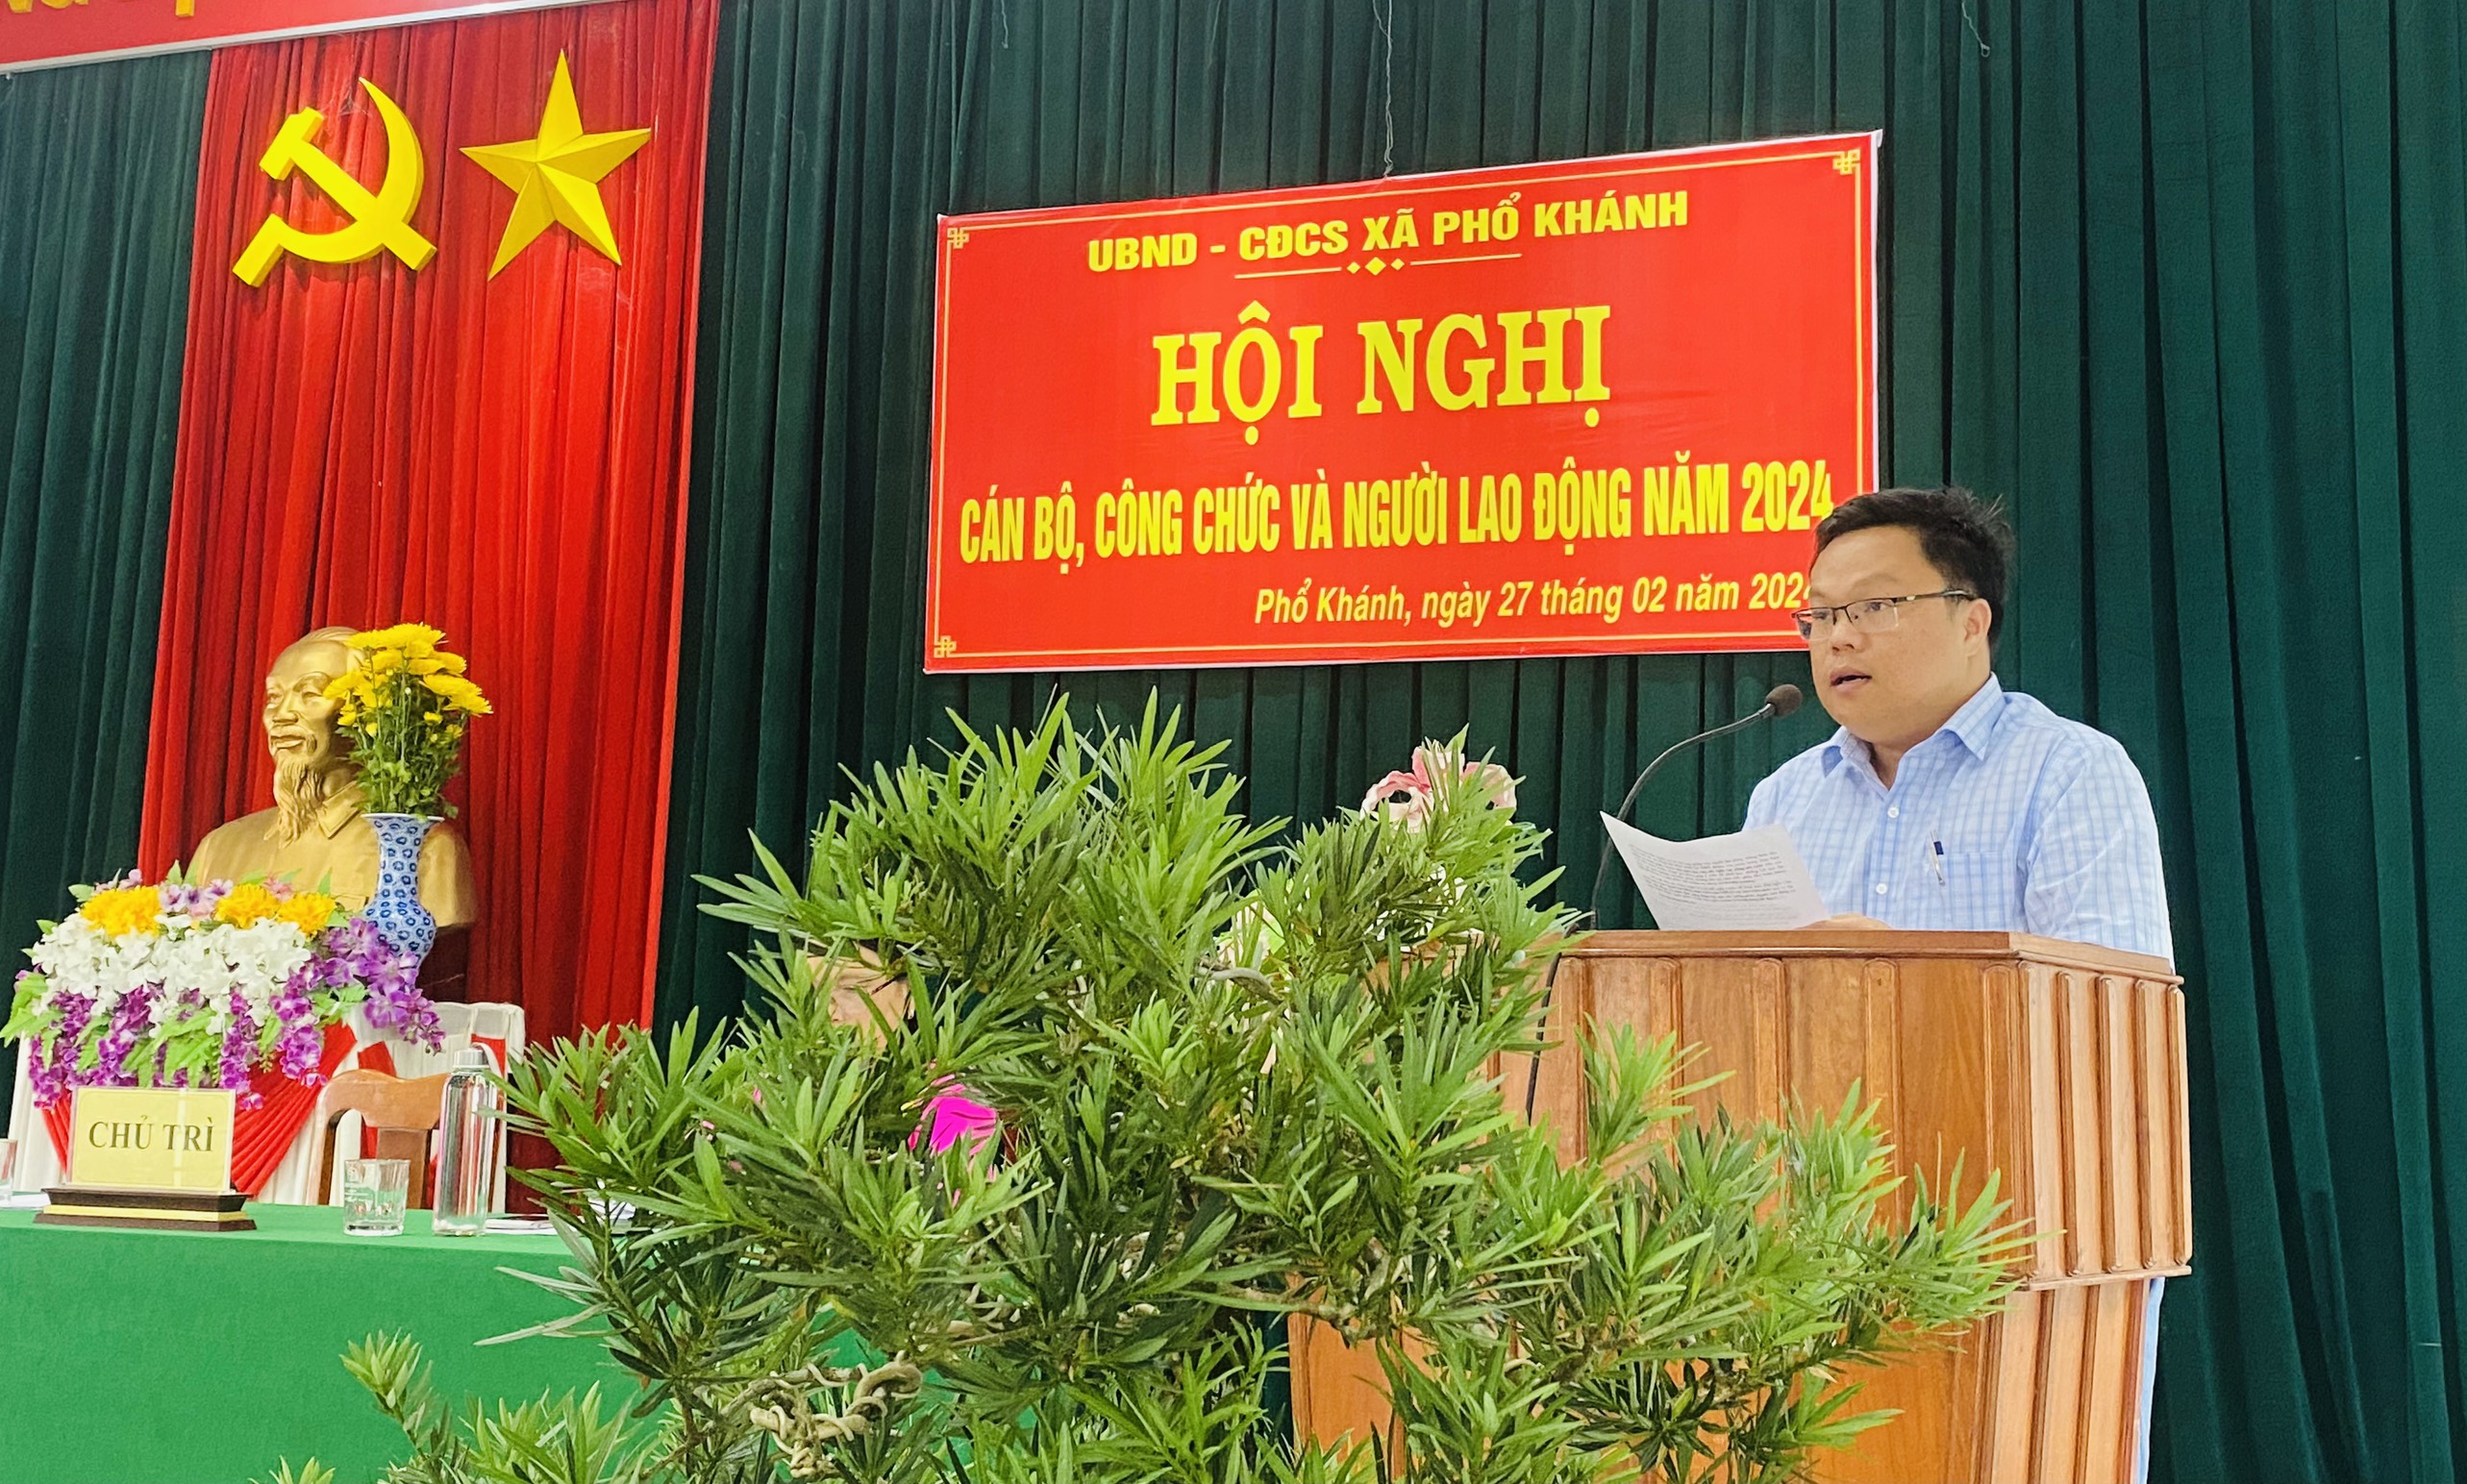 Xã Phổ Khánh tổ chức Hội nghị cán bộ, công chức, người lao động năm 2024